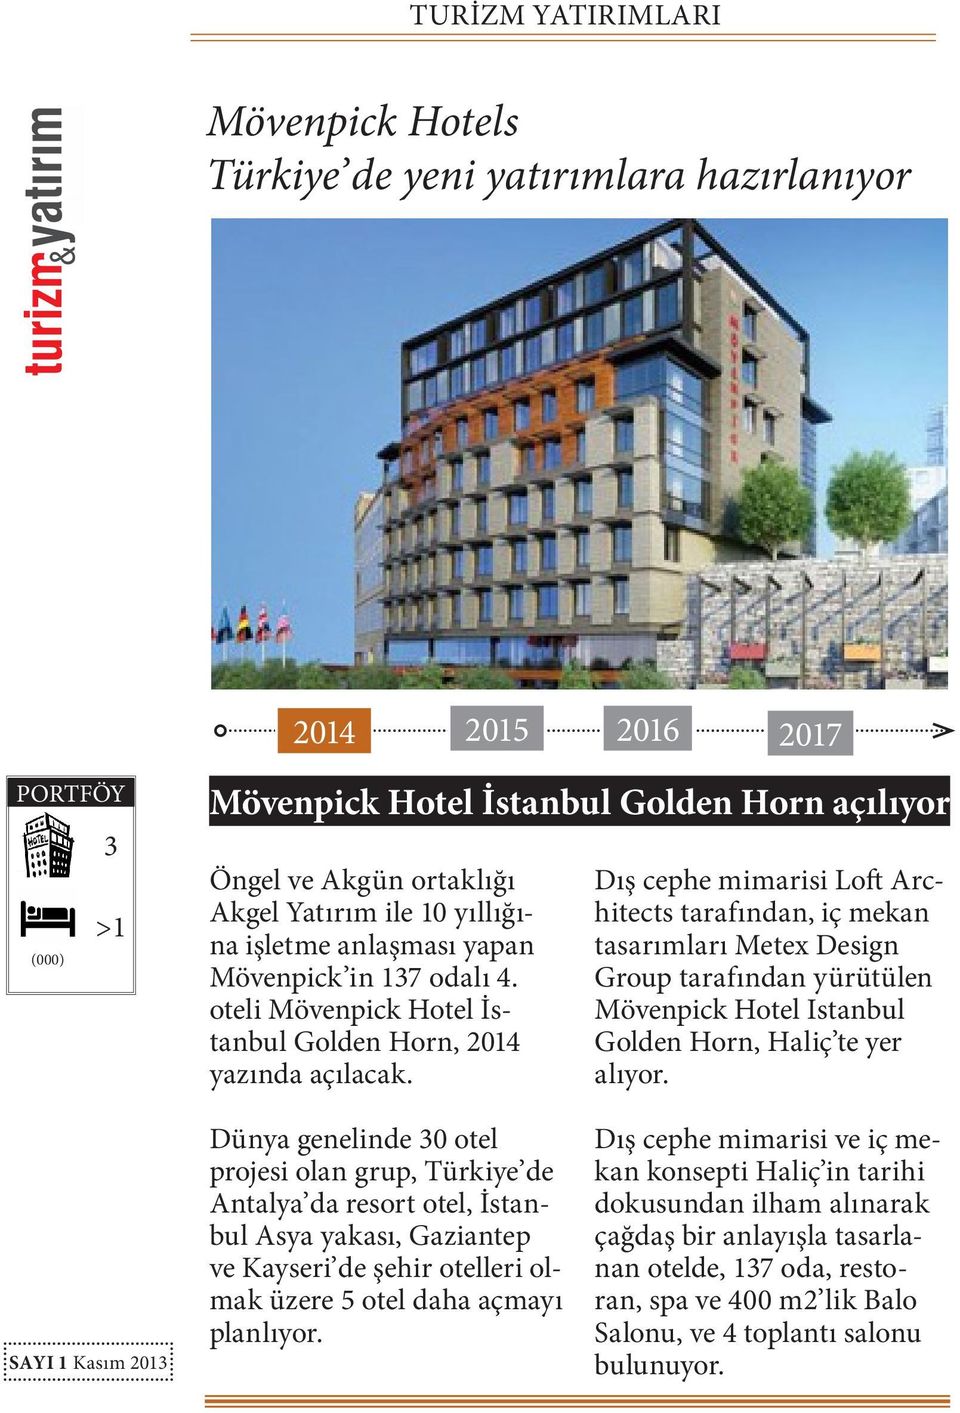 Dış cephe mimarisi Loft Architects tarafından, iç mekan tasarımları Metex Design Group tarafından yürütülen Mövenpick Hotel Istanbul Golden Horn, Haliç te yer alıyor.